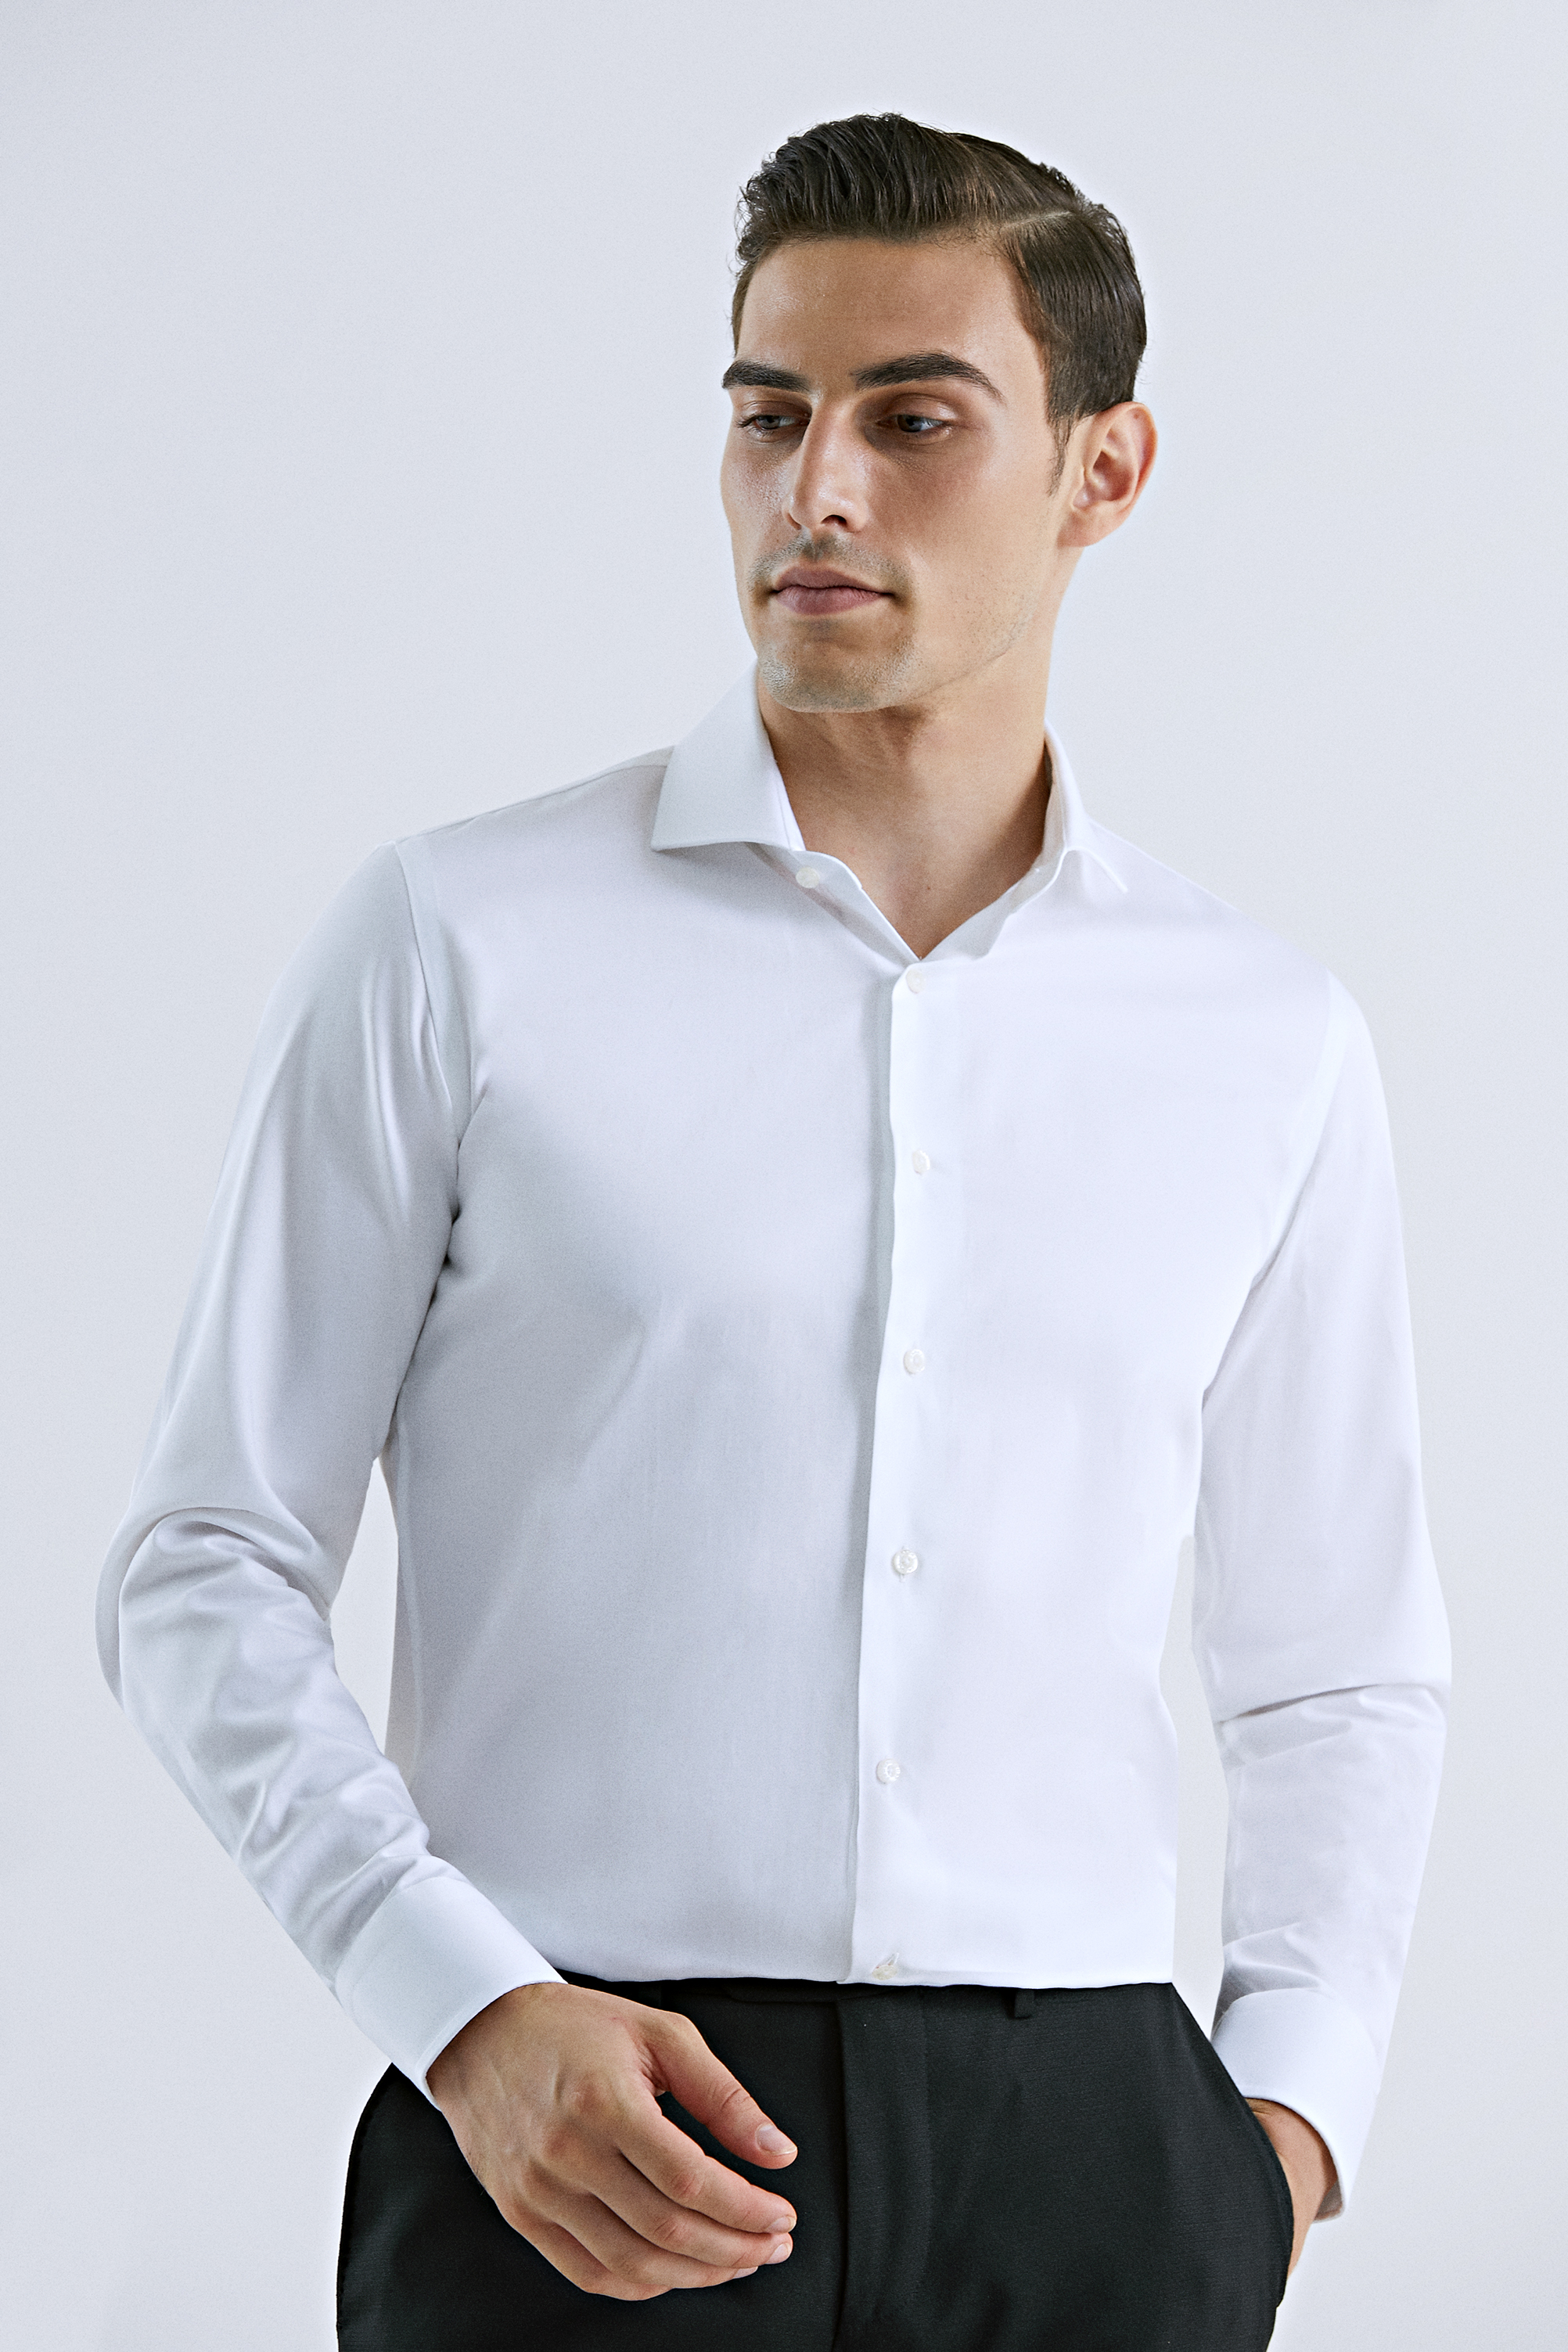 Damat Tween Damat Slim Fit Beyaz Düz Nano Care Gömlek. 2